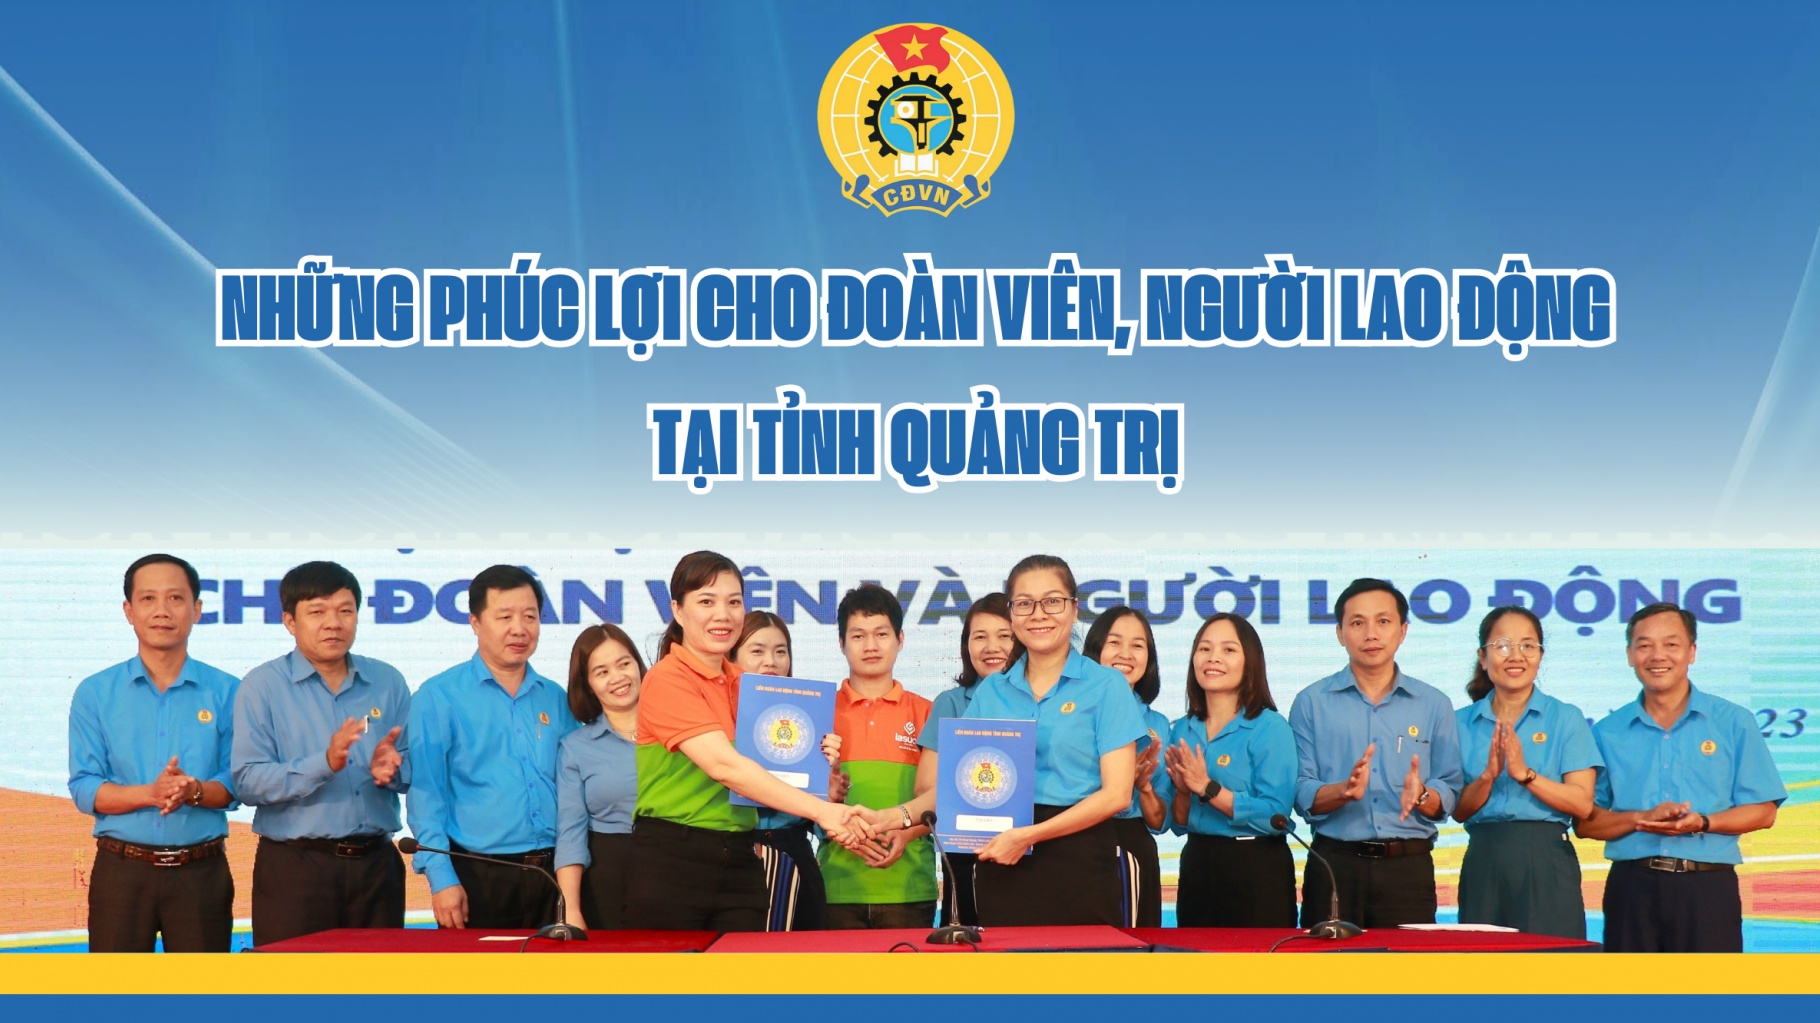 Những phúc lợi cho đoàn viên, người lao động tại tỉnh Quảng Trị